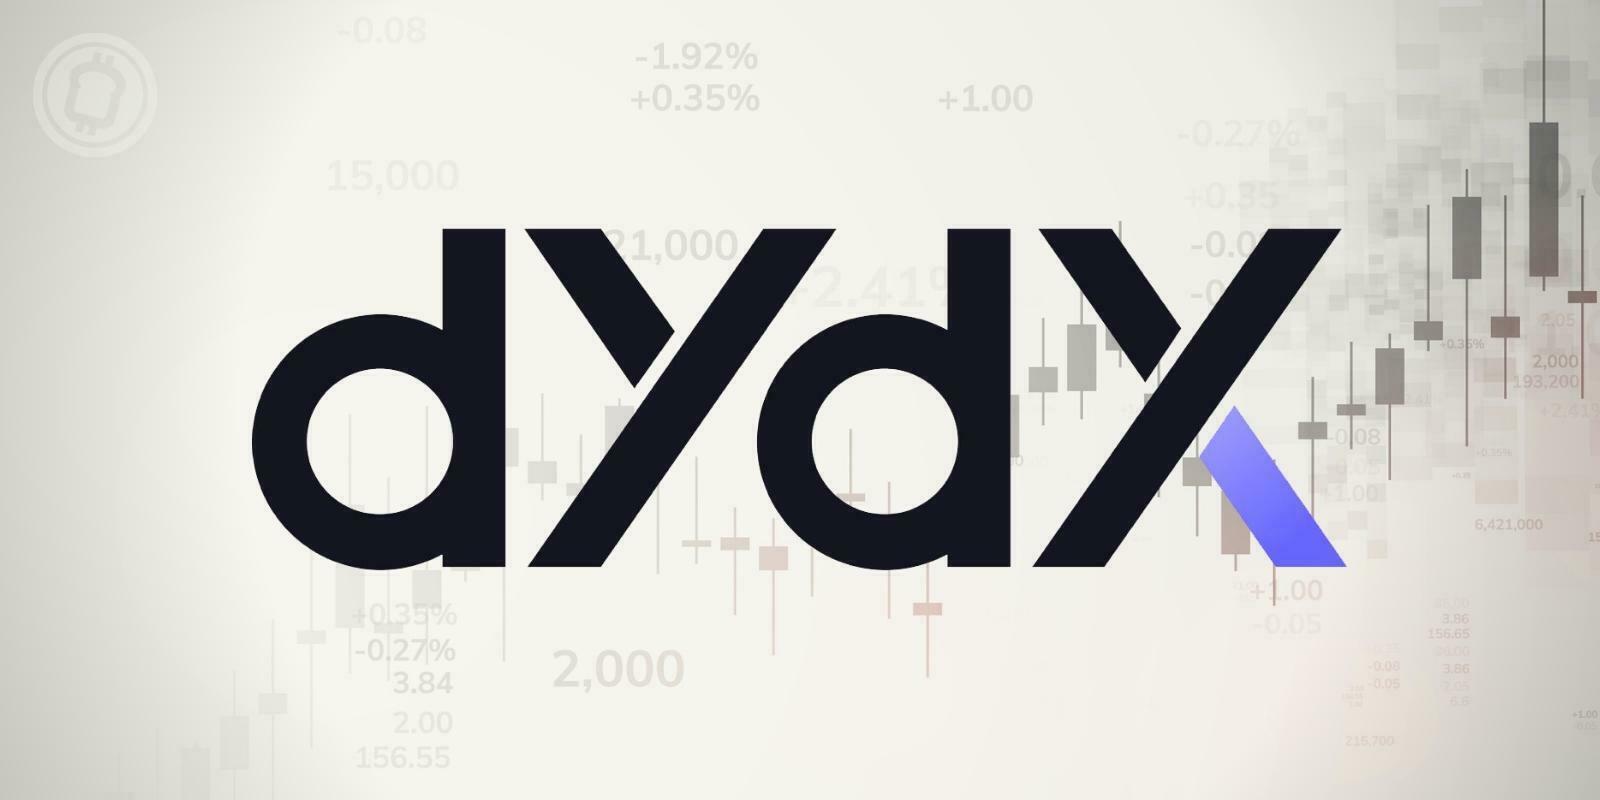 La plateforme de trading décentralisée dYdX lance son application mobile sur iOS